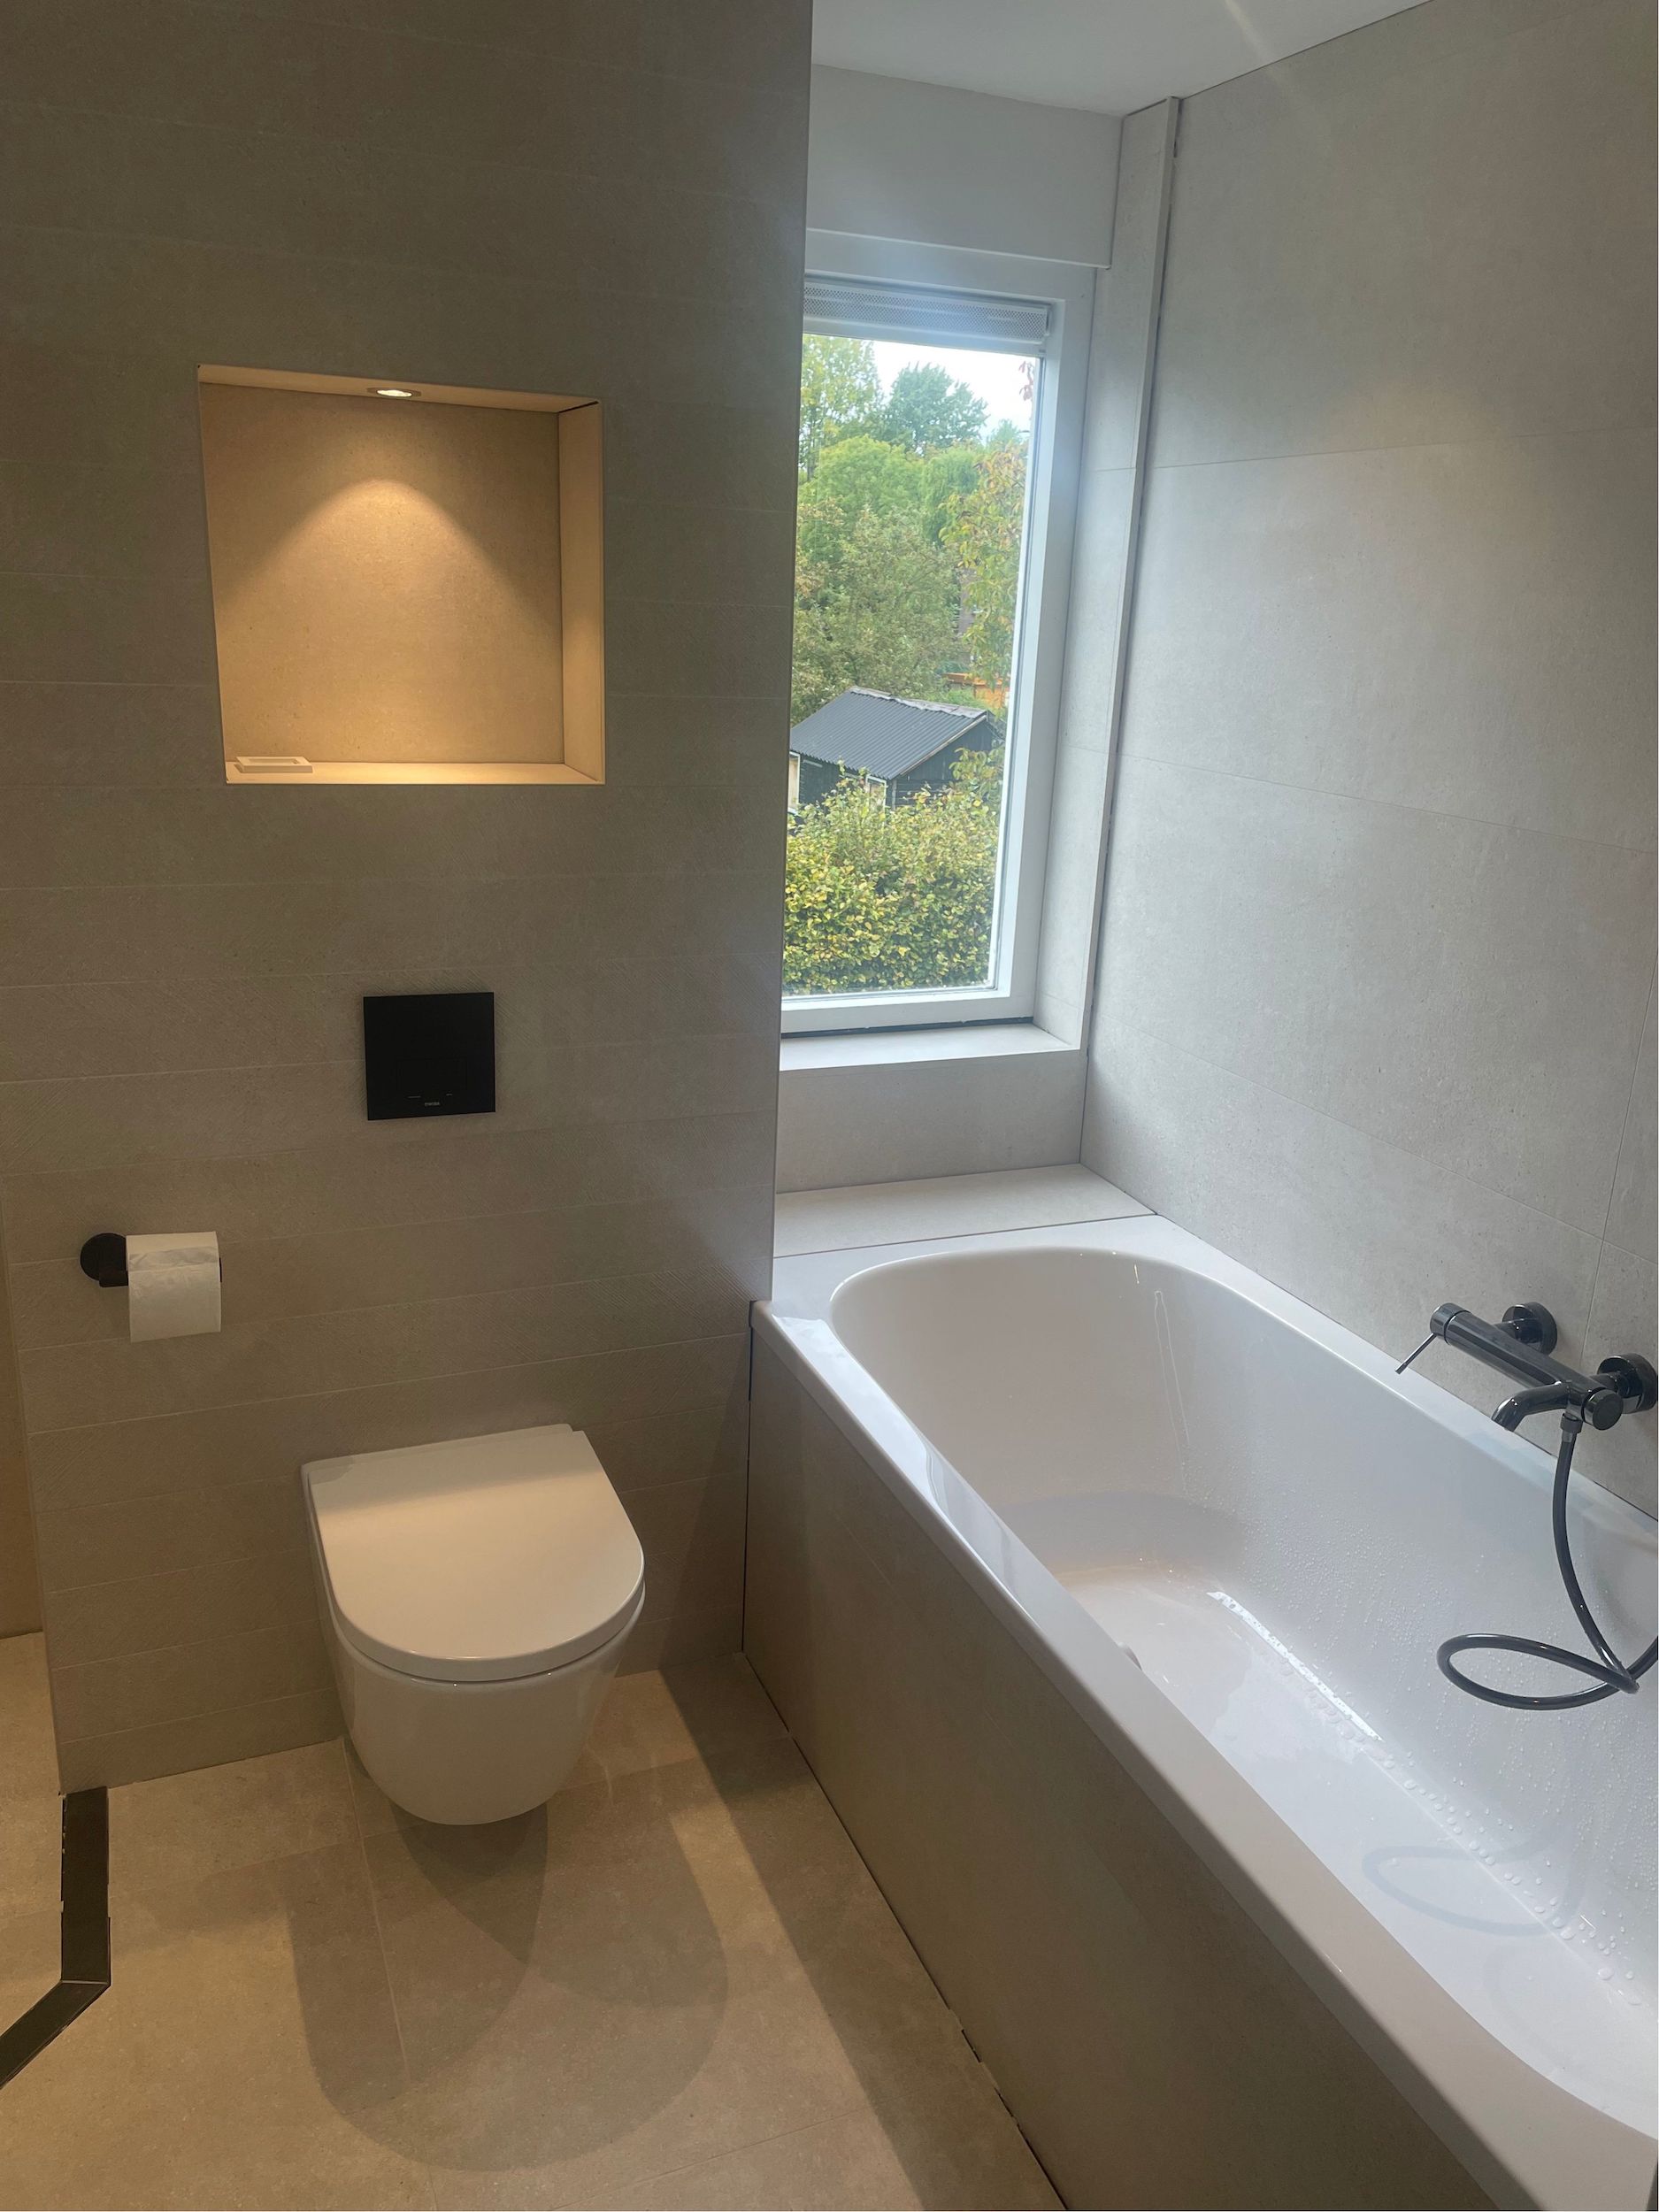 Bizot Installatietechniek – Project badkamer verbouwing 2022 5